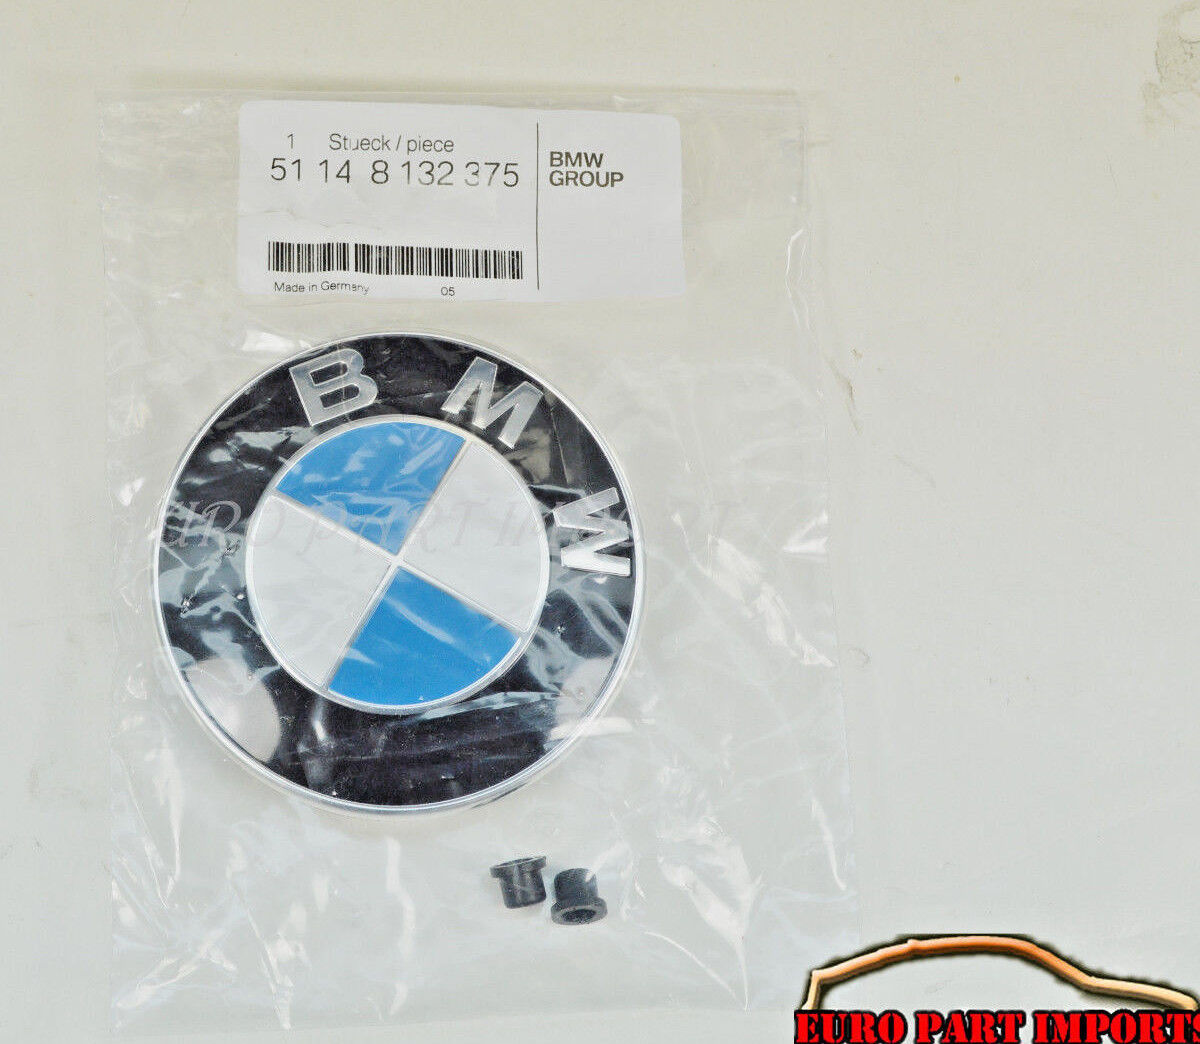 BMW Hood Emblem Badge Logo Roundel 82mm + 2pcs Grommets Genuine Factory Original